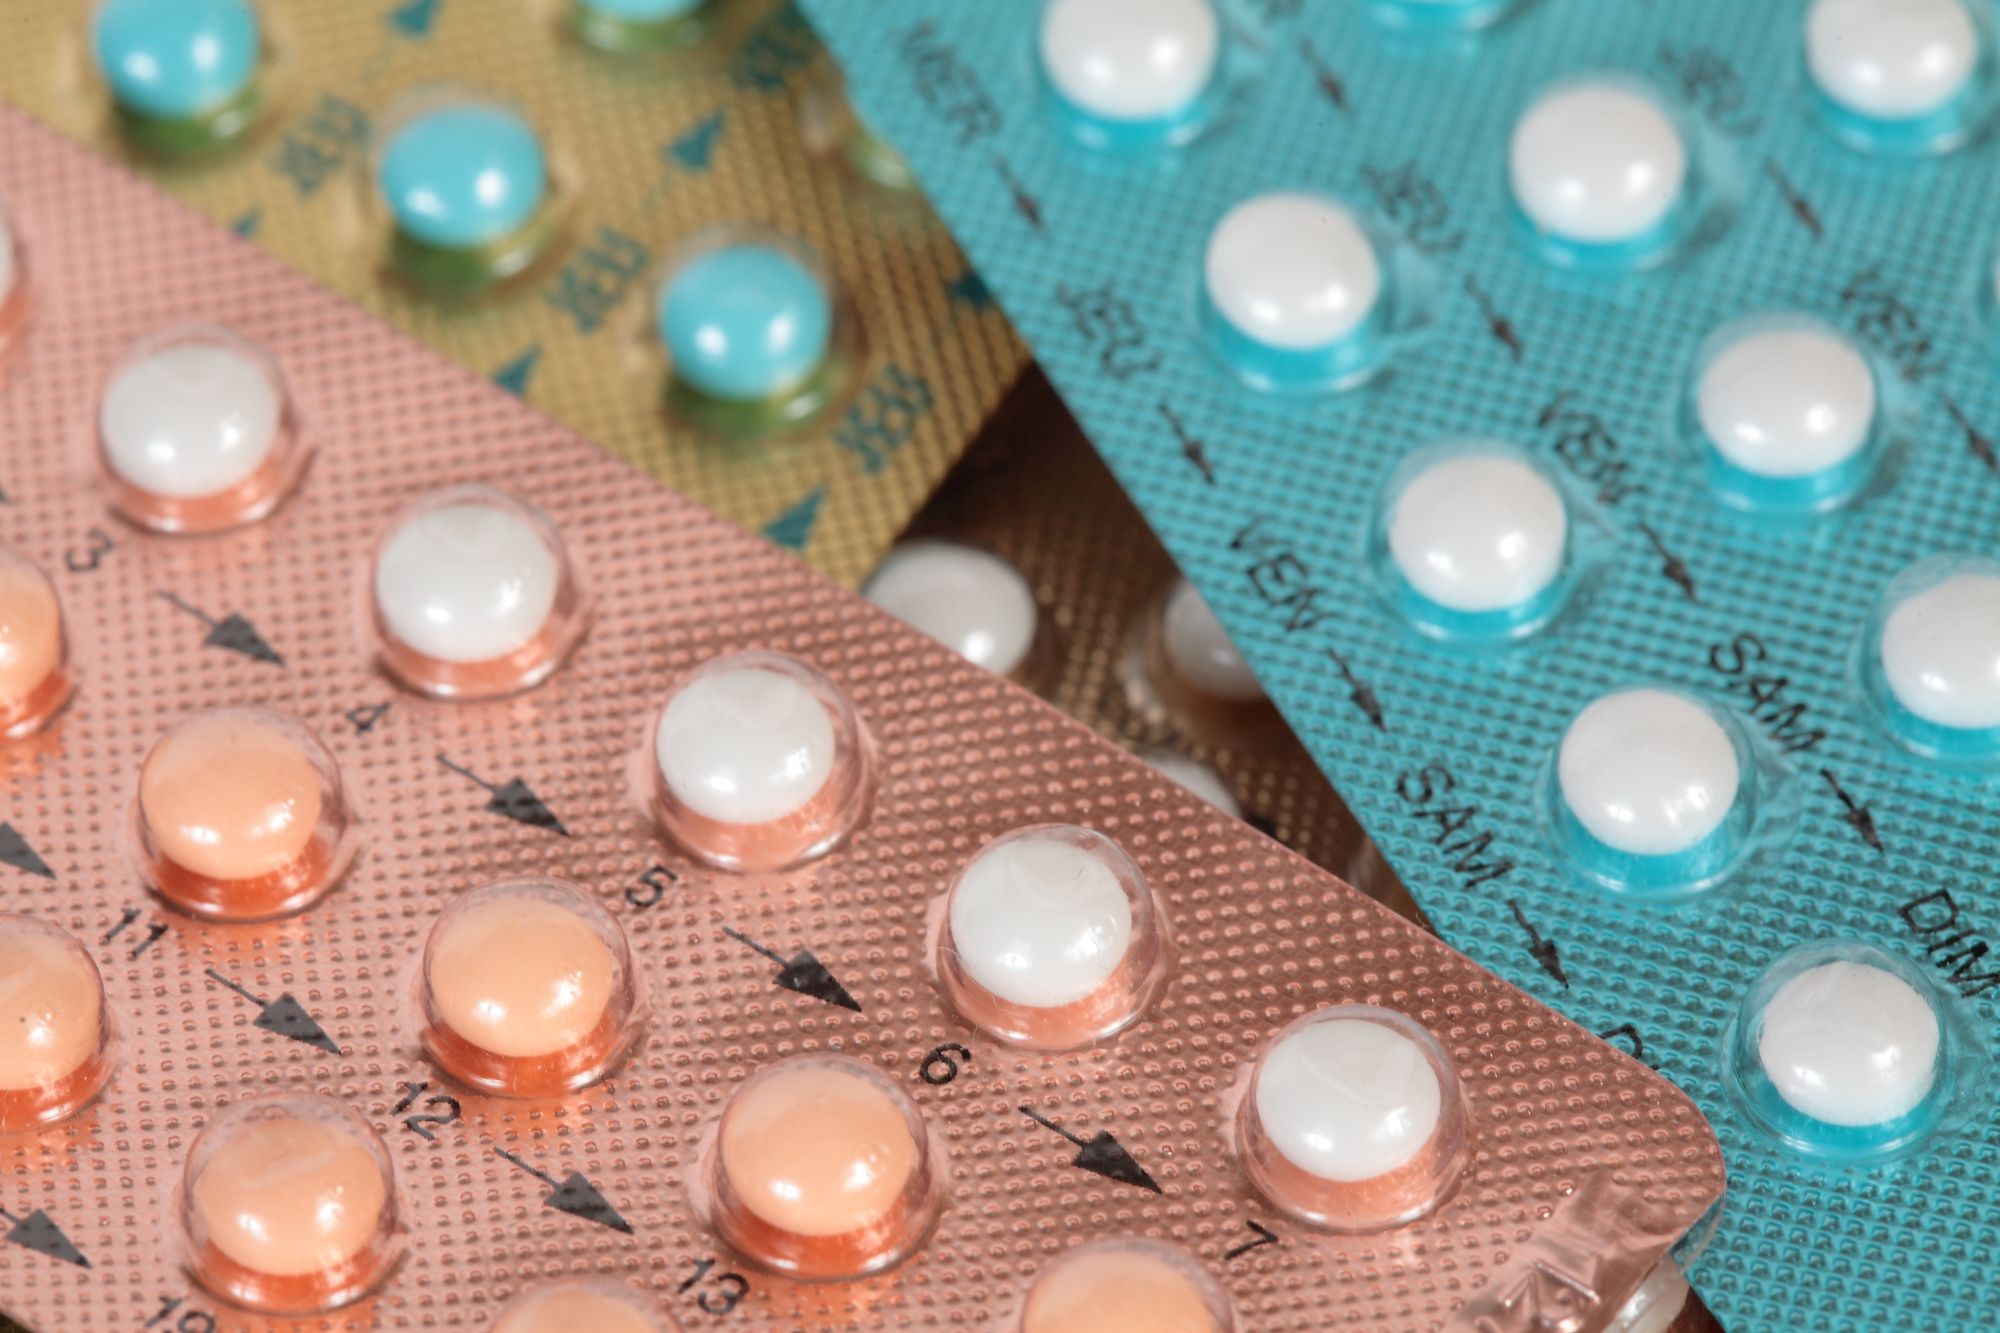 Alternativen zur Pille: methoden zur Schwangerschaftsverhütung